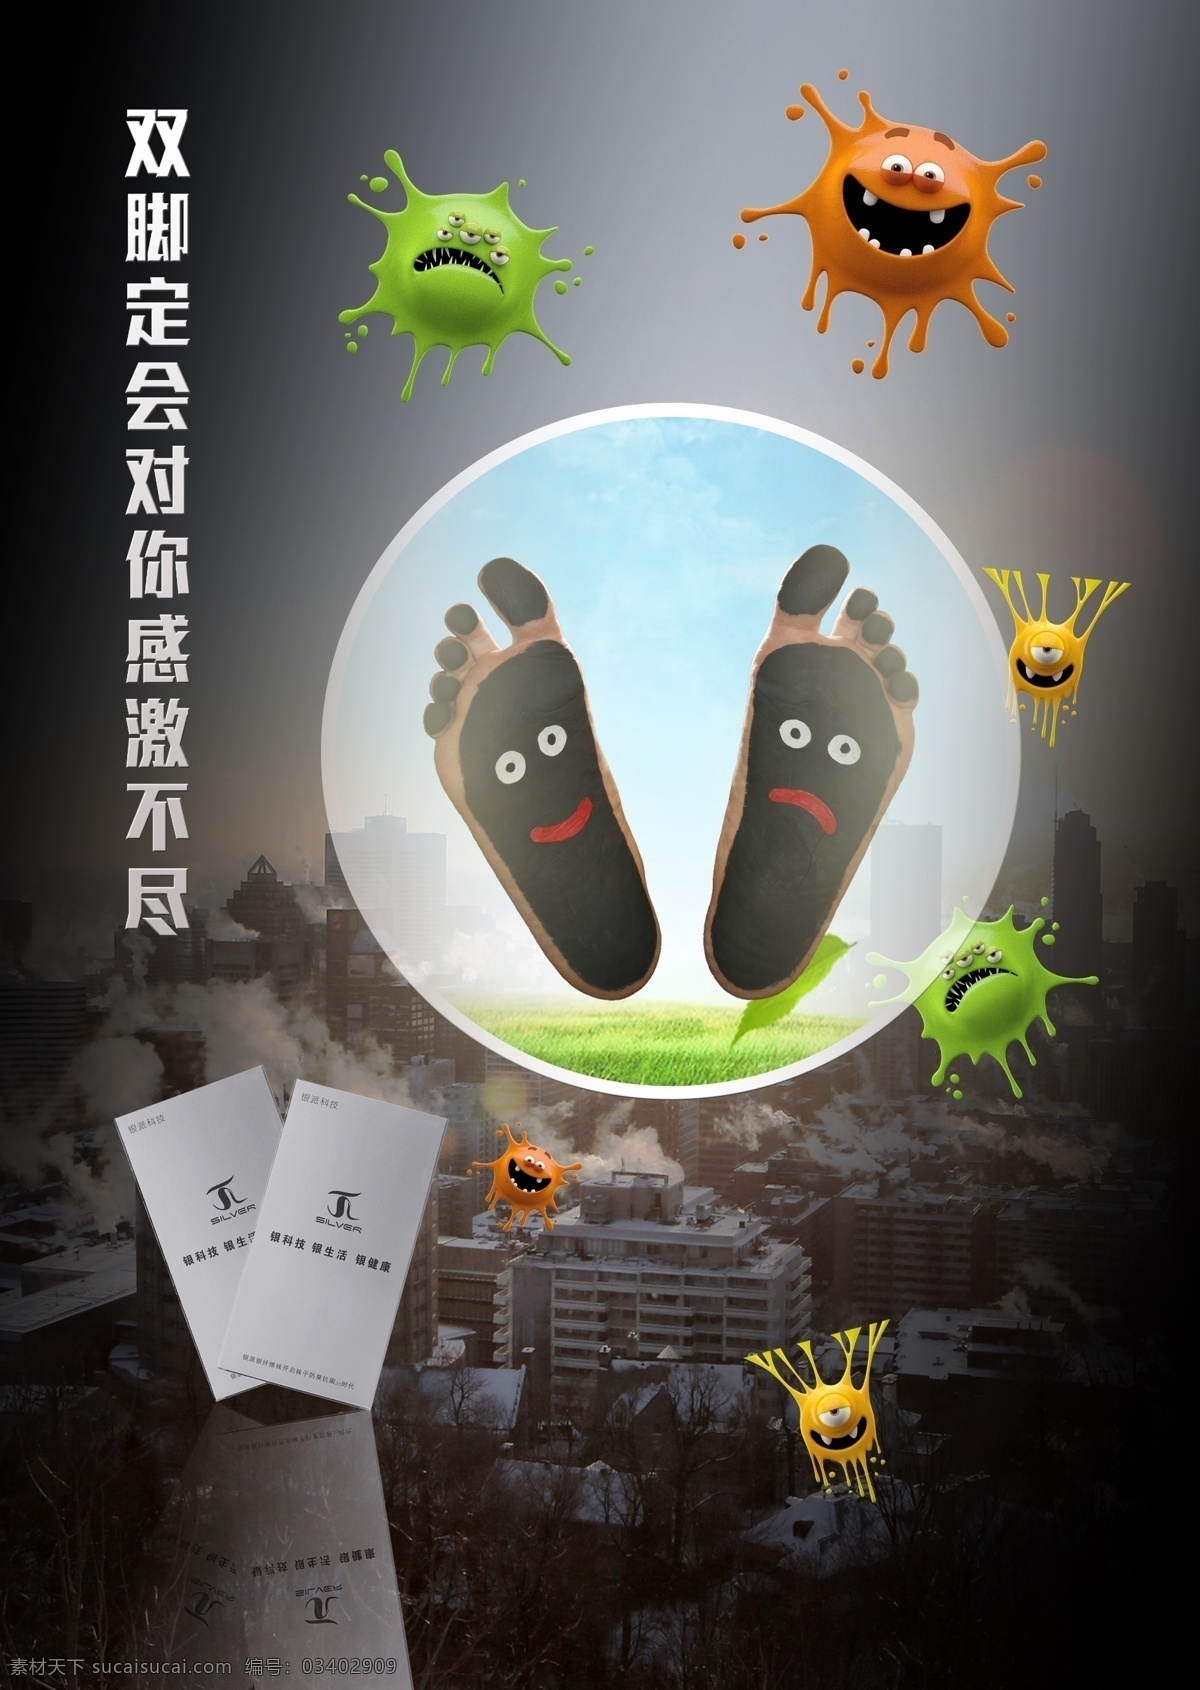 双脚感激 袜子 防护 病菌 微商素材 抗菌 黑色